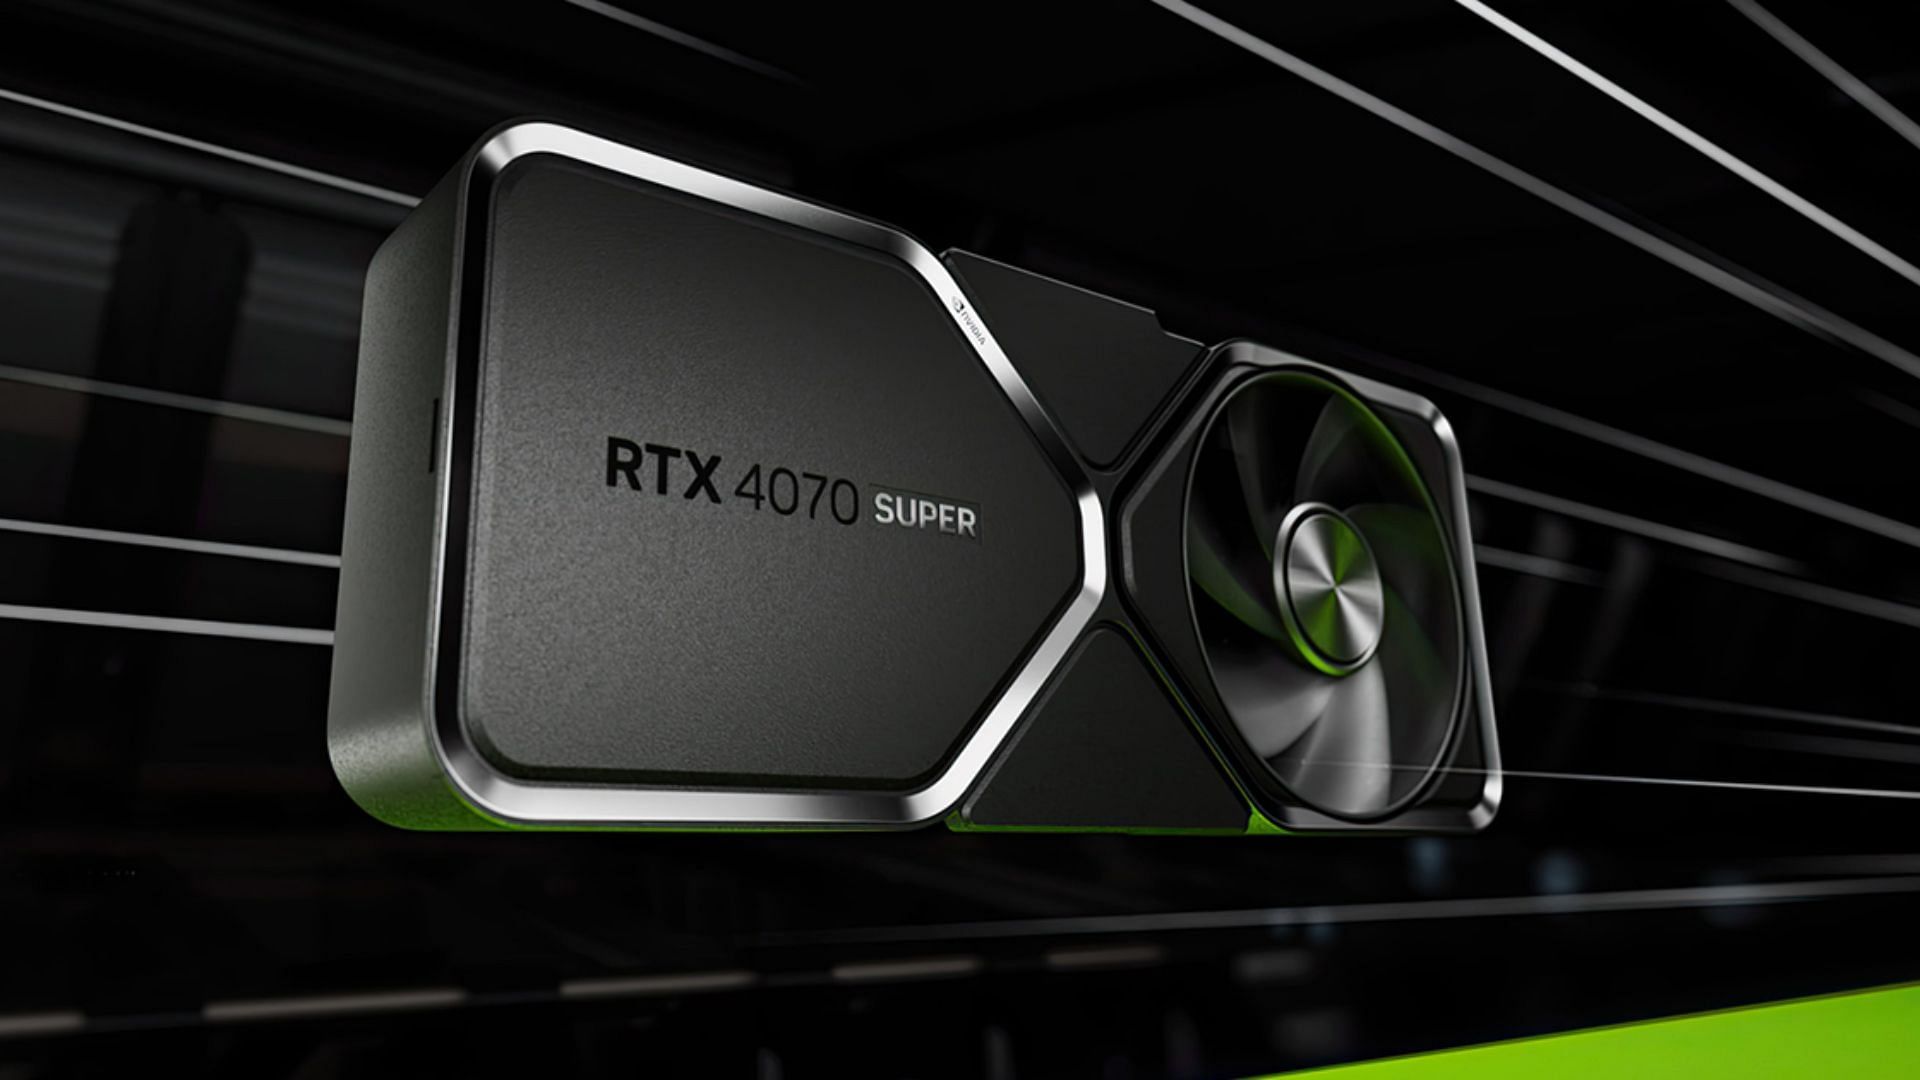 The Nvidia RTX 4070 Super is the latest 1440p gaming GPU (Image via Nvidia)